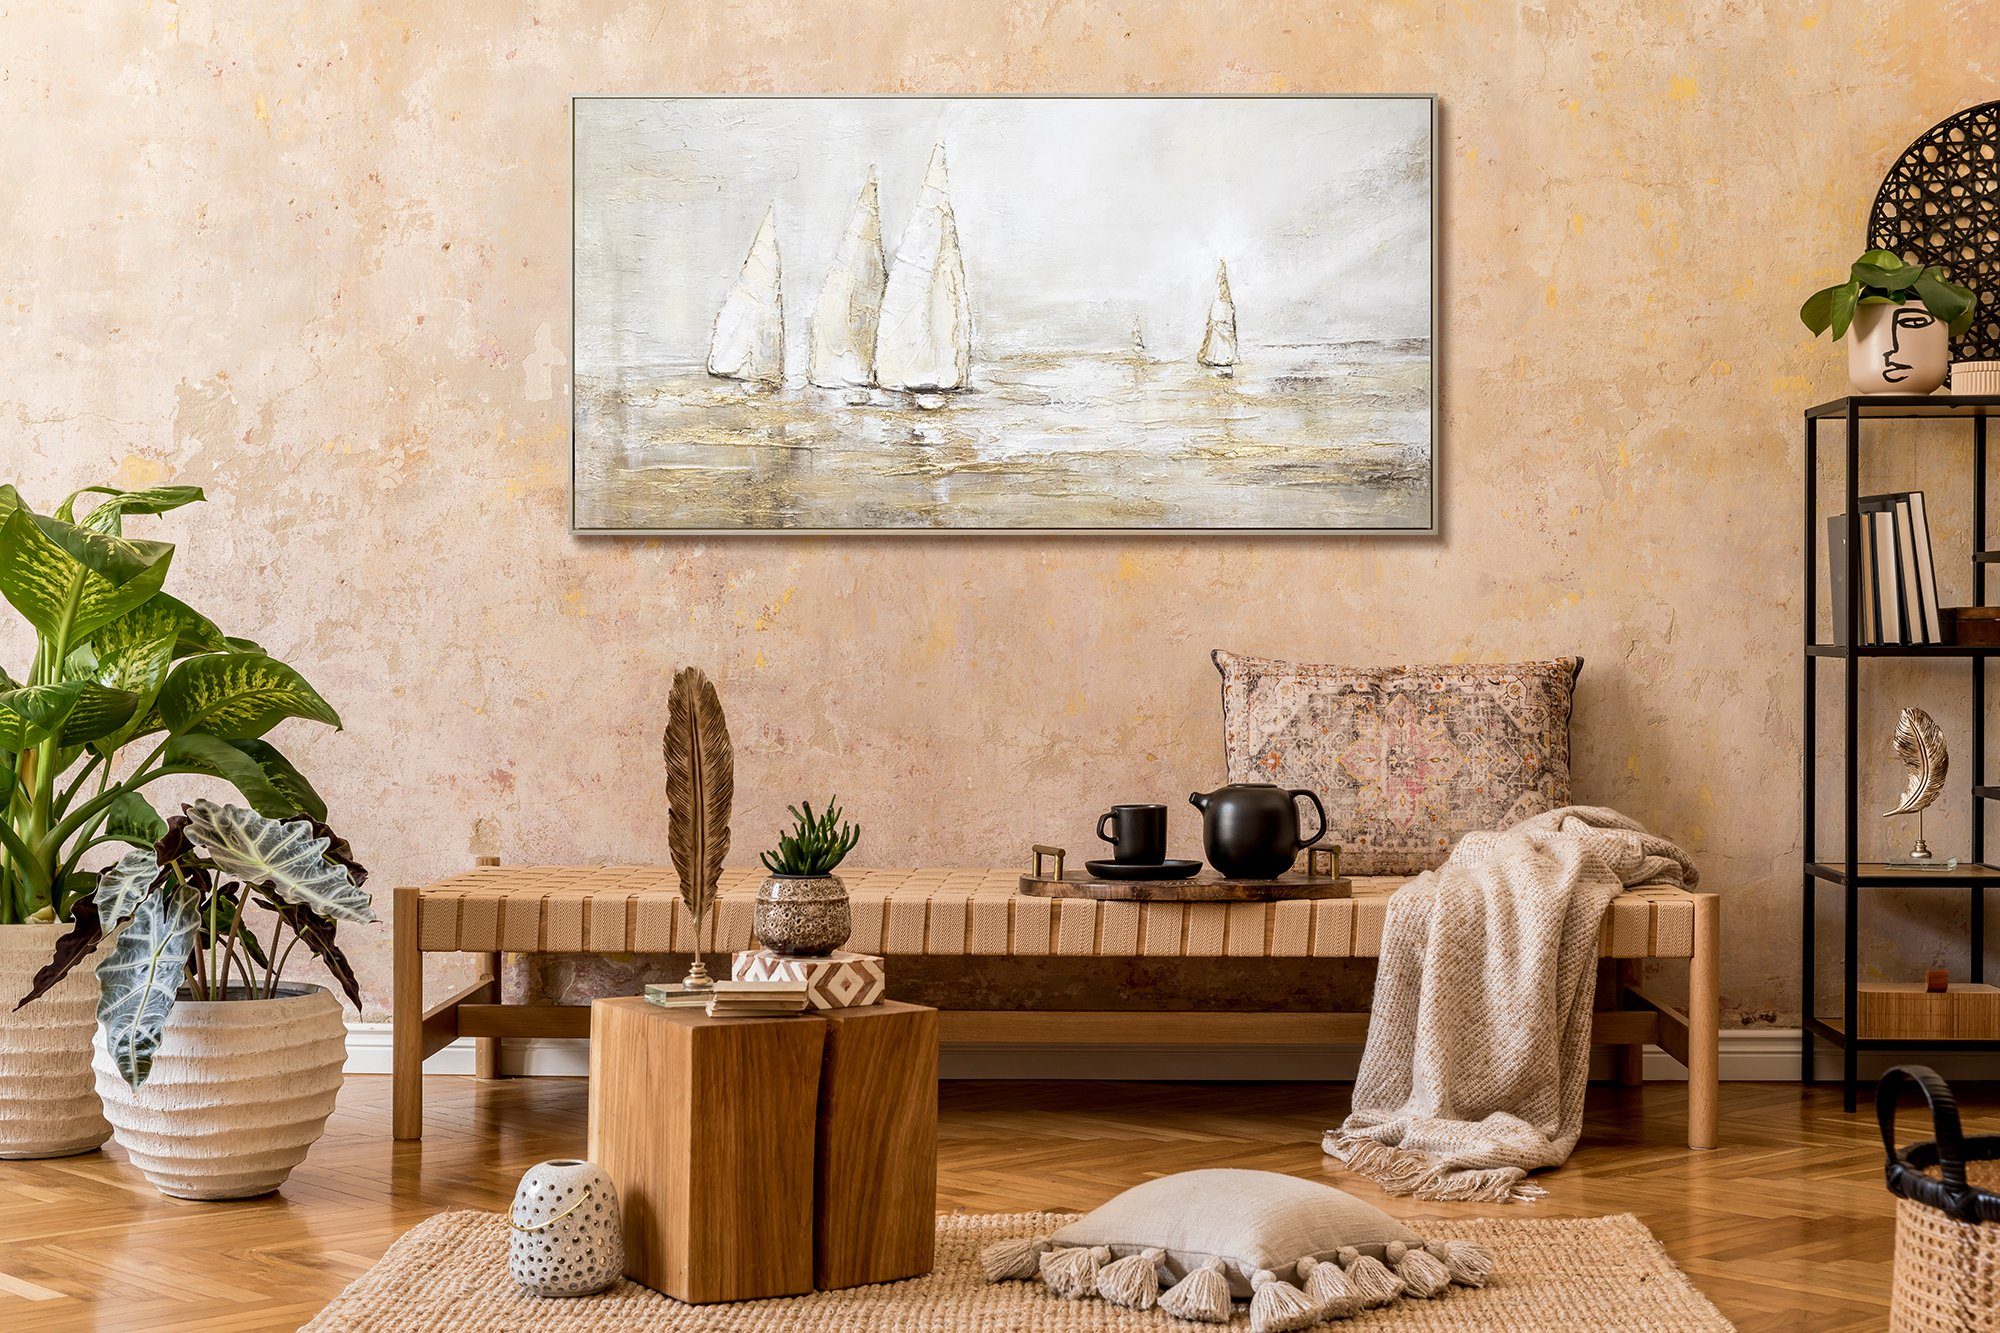 Wasser Segelboote Meer in YS-Art Rahmen Landschaftsbilder, Gold Mit Beige Sonnenblendung, Leinwand Bild Handgemalt Gemälde